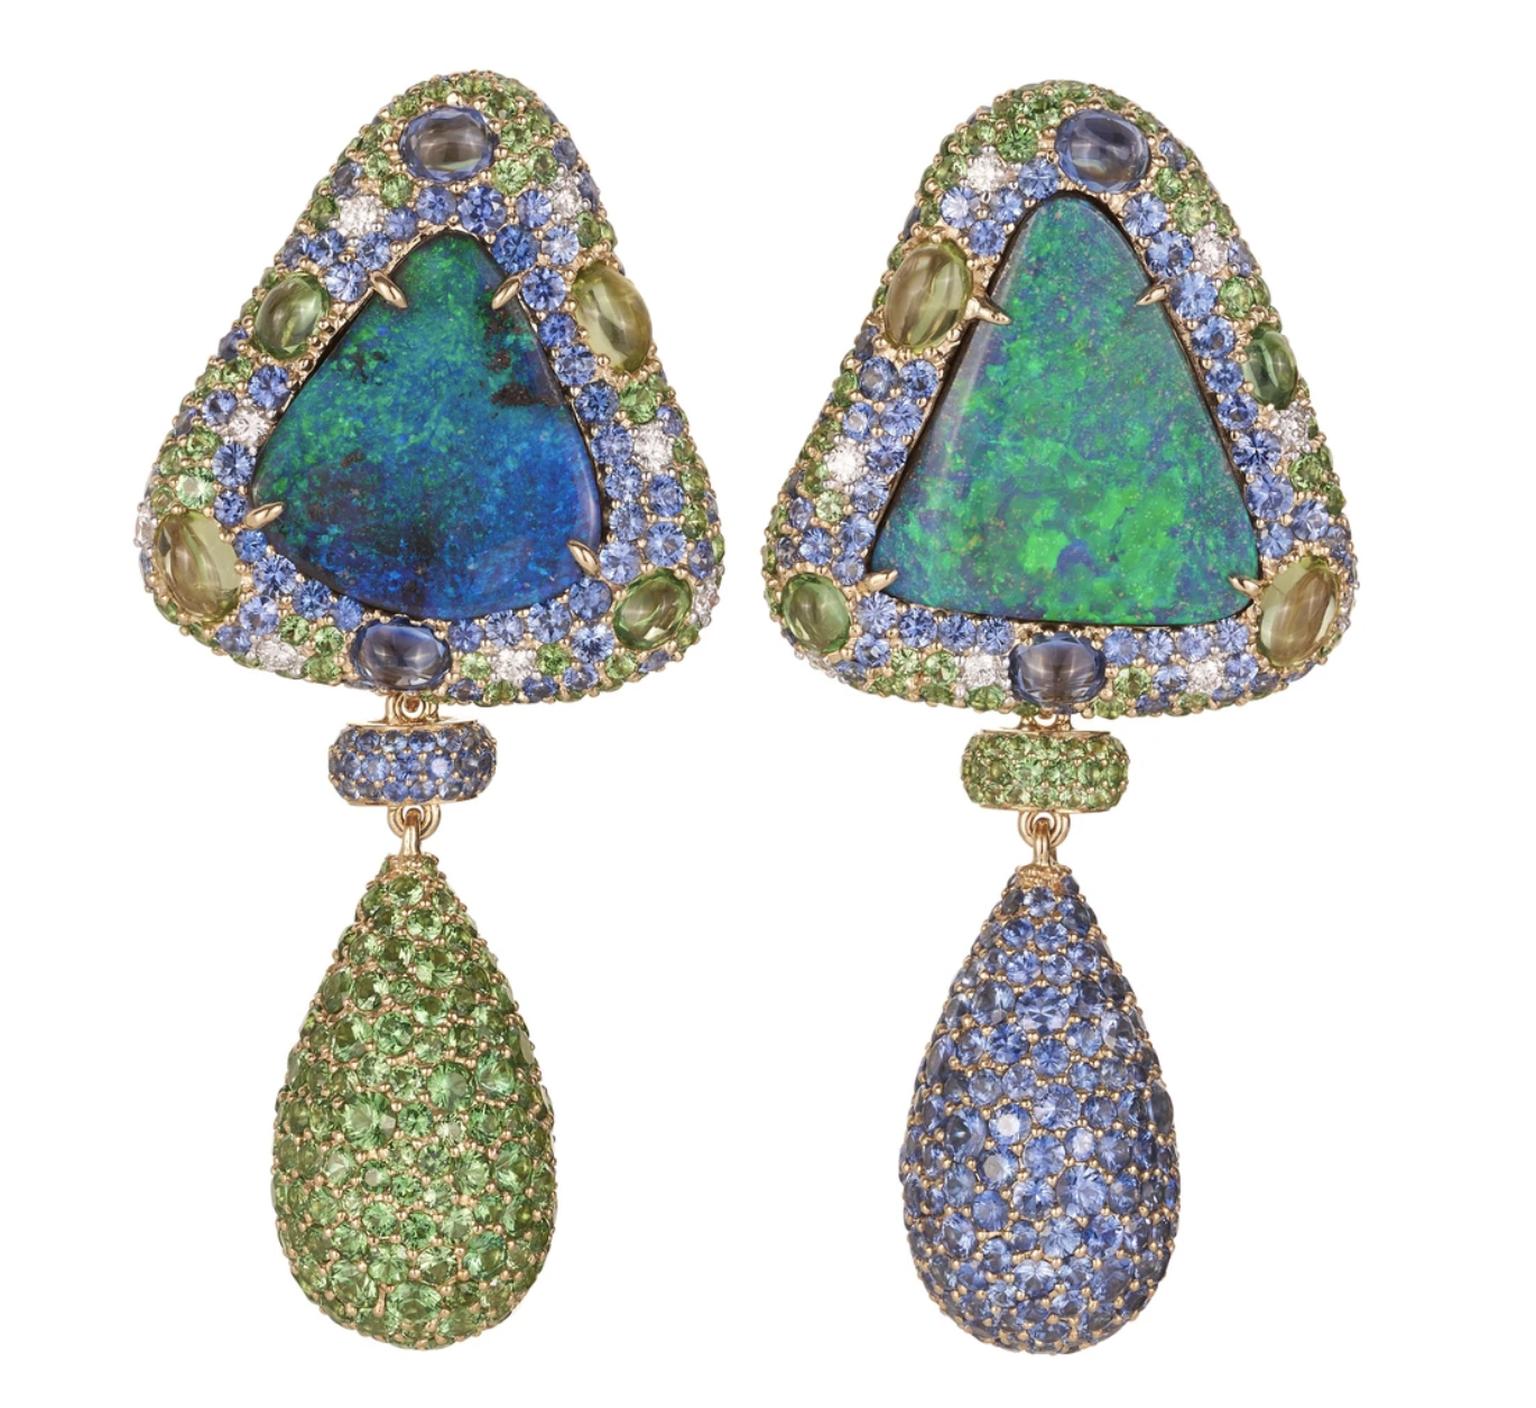 Opal earrings by Margot McKinney